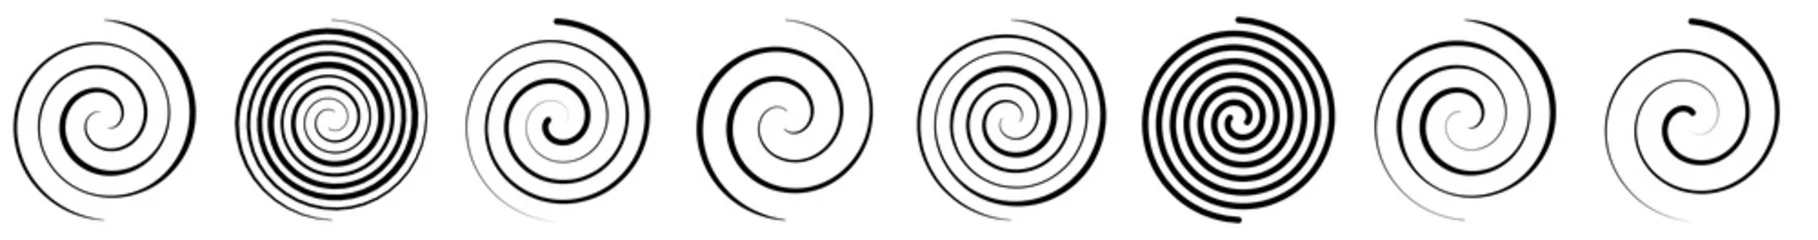  Spiral, swirl, twirl and whirl element. Helix, volute ripple, vortex shape © Pixxsa